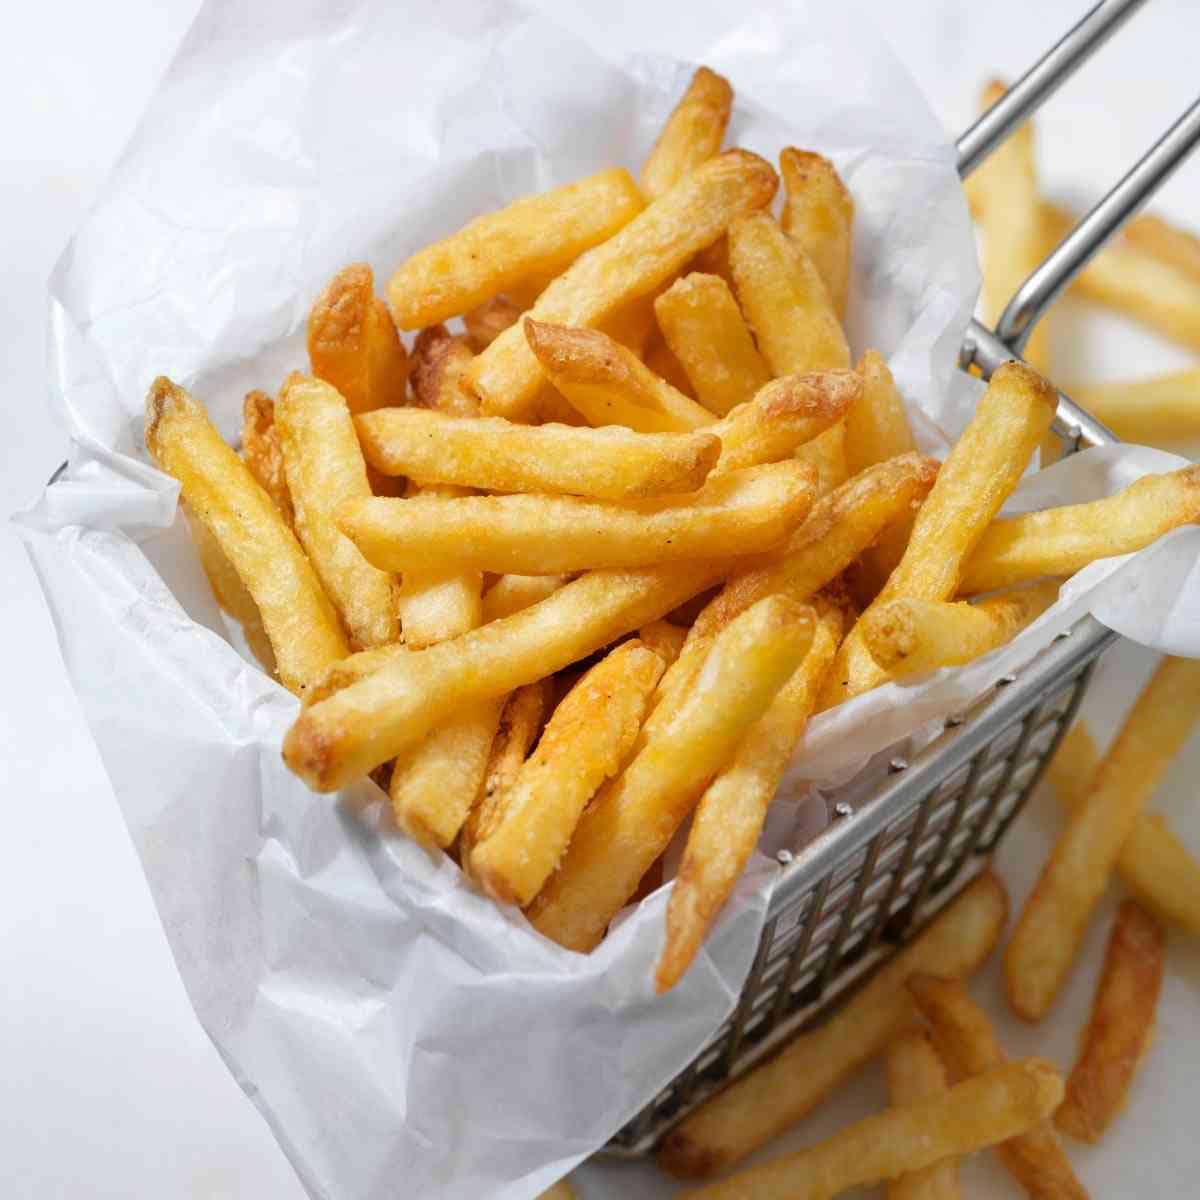 Patatas fritas congeladas hechas en Airfryer: ¡Crujientes y